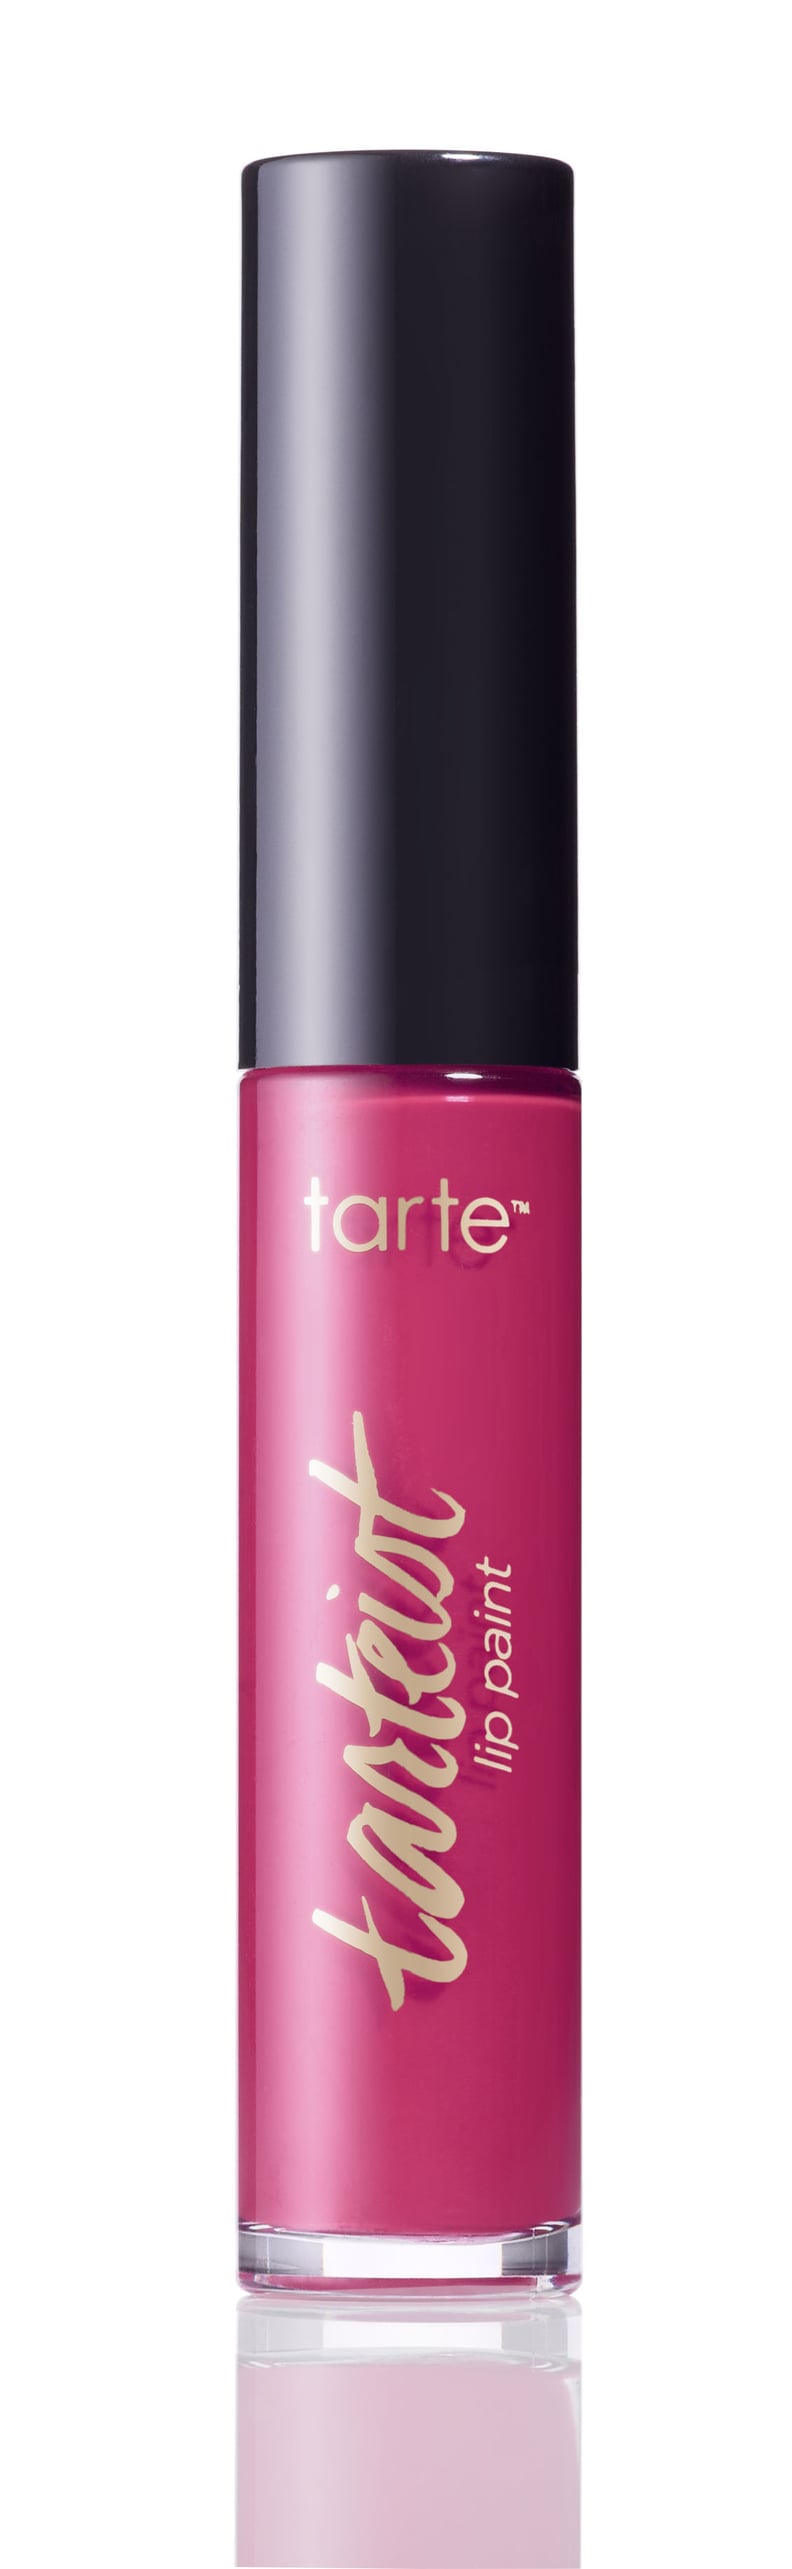 Tarte Cosmetics Tarteist Lip Paint in Adorbs